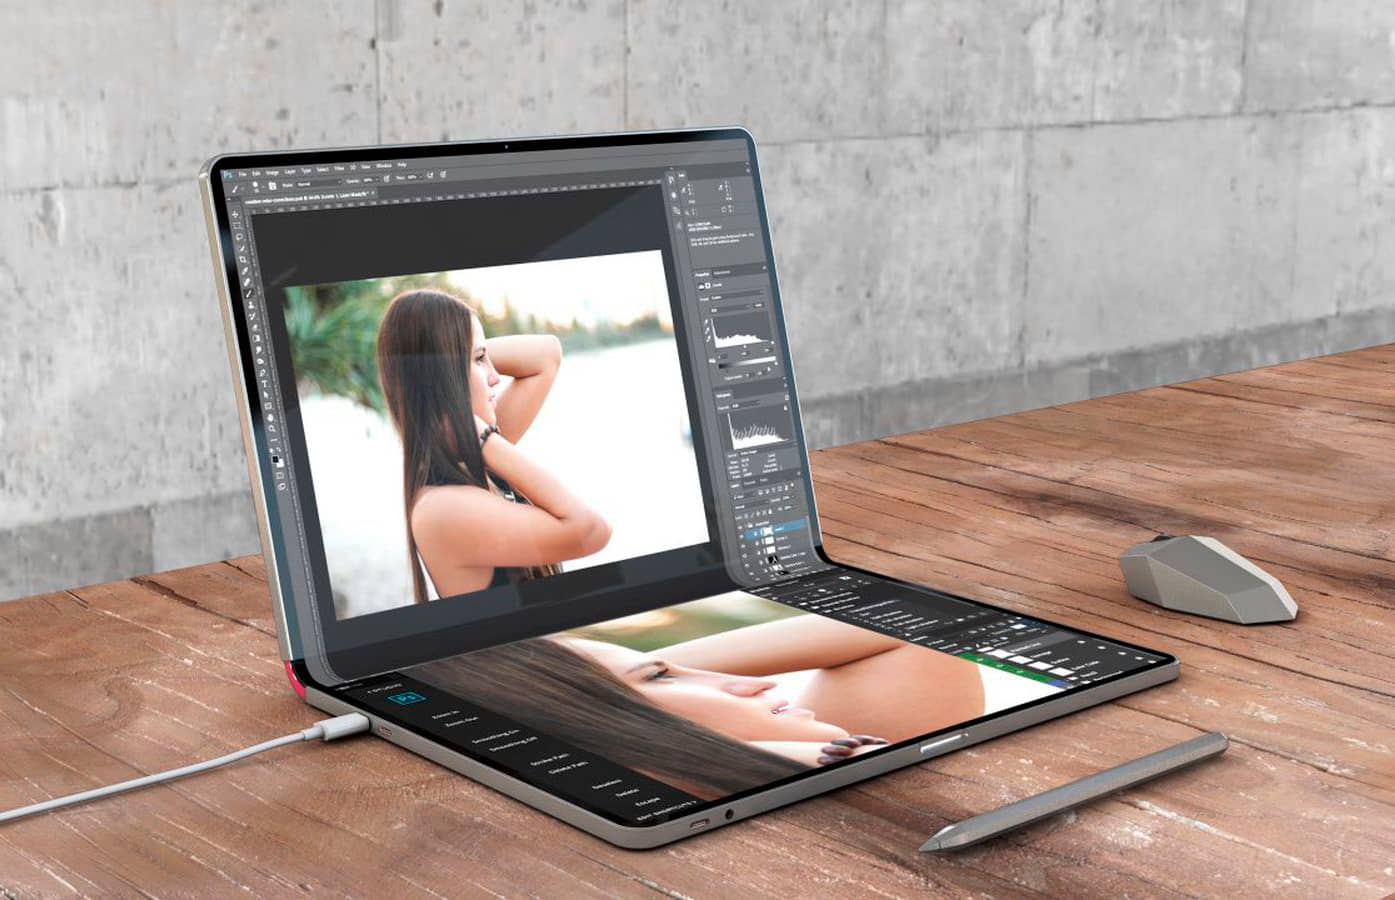 Apple может выпустить 20-дюймовый ноутбук со складным экраном в 2027 году